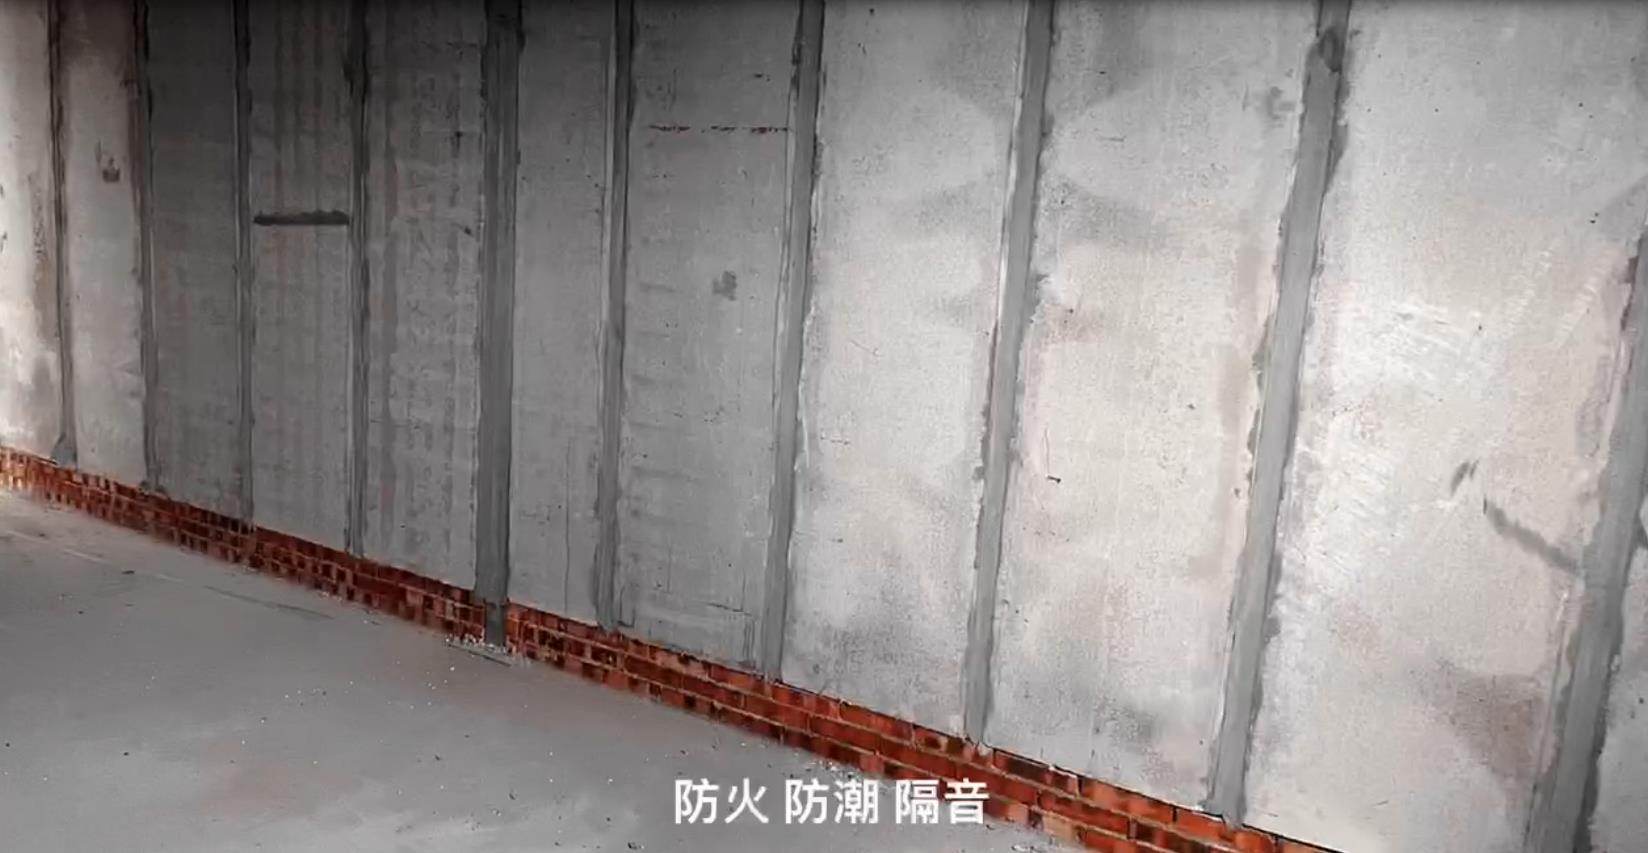  陕西硅钙轻质隔墙板生产厂家